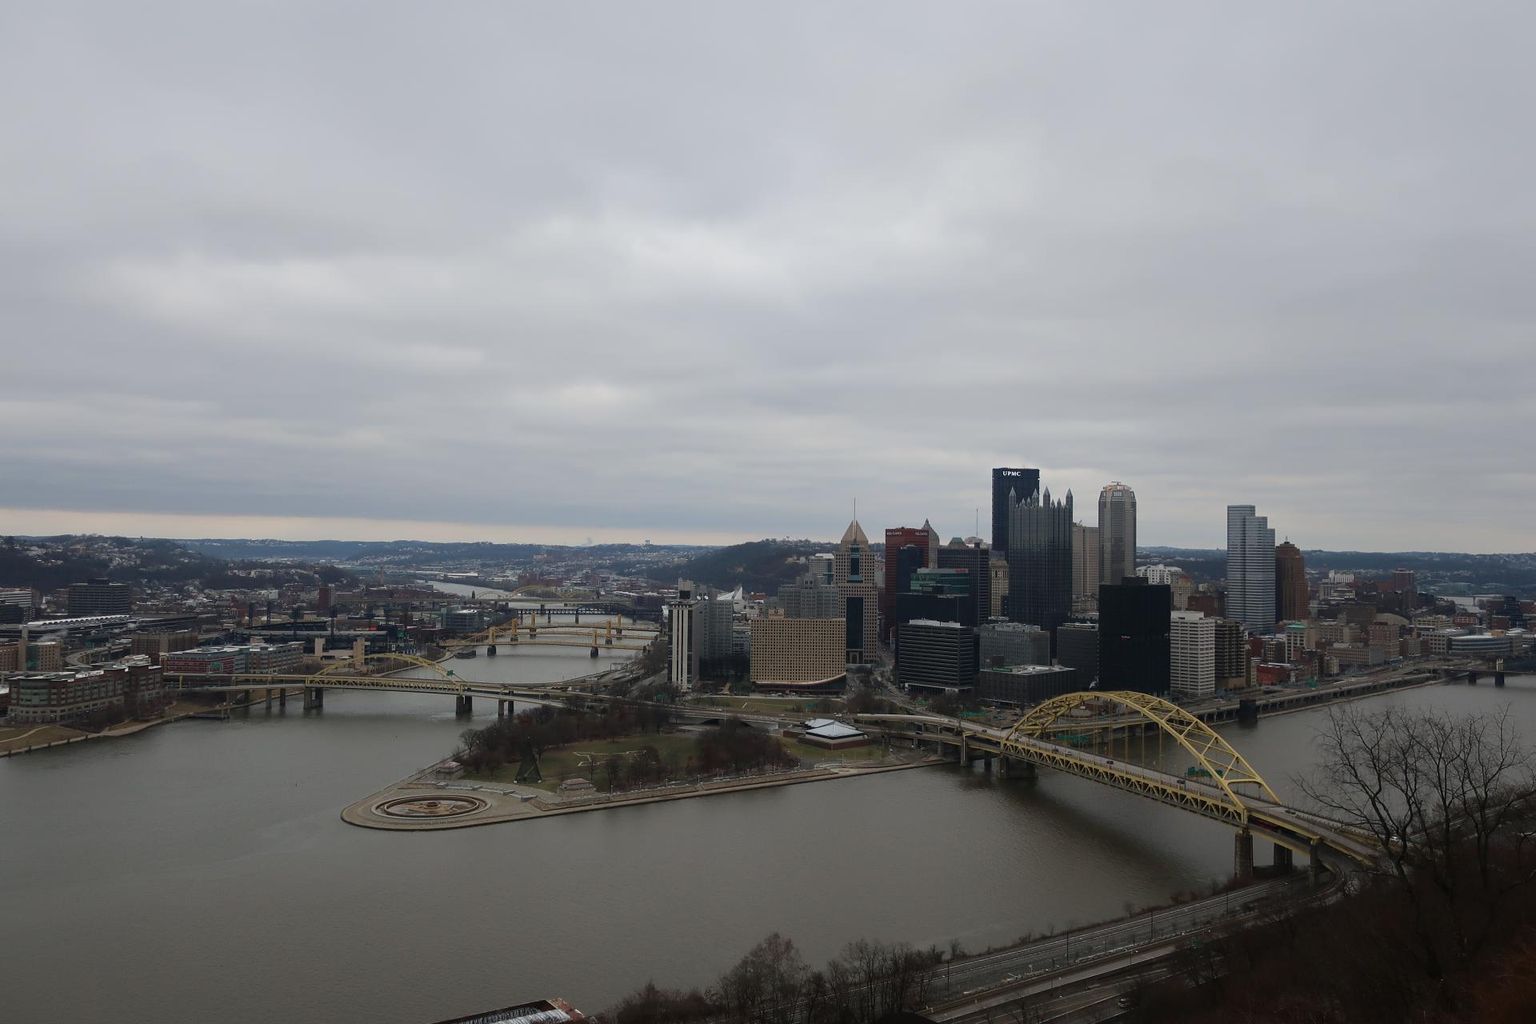 Vaade Mt. Washingtonilt Pittsburghi kesklinnale ja kahe jõe kohtumiskohale. Kuigi pindalalt väike, on Pittsburghil suurlinlik siluett.